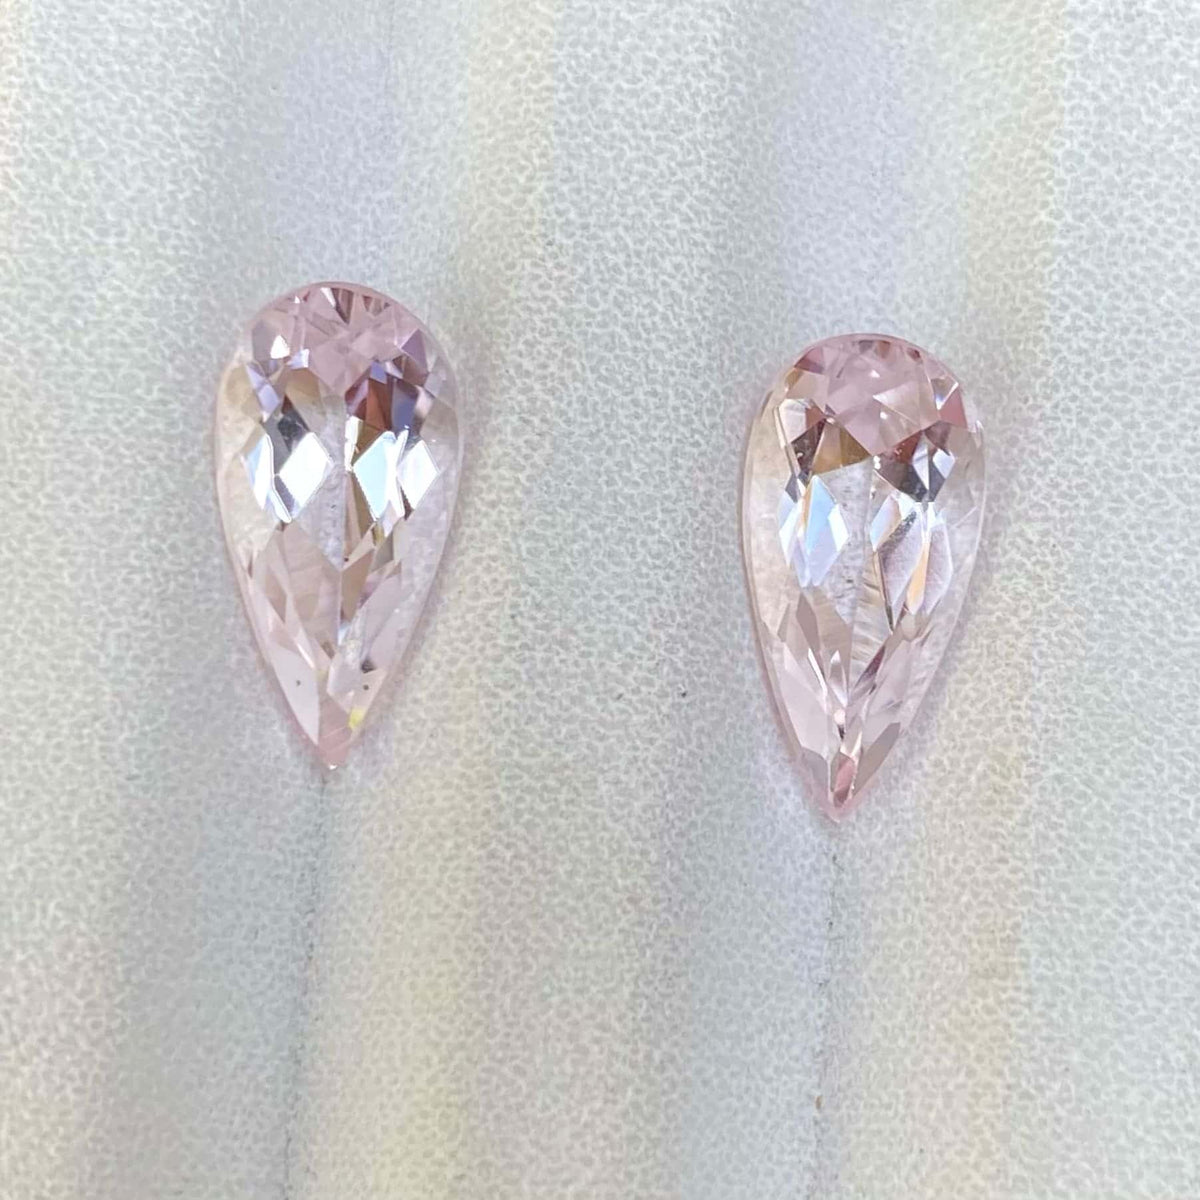 Matching Morganite Pair - 3.30 carat